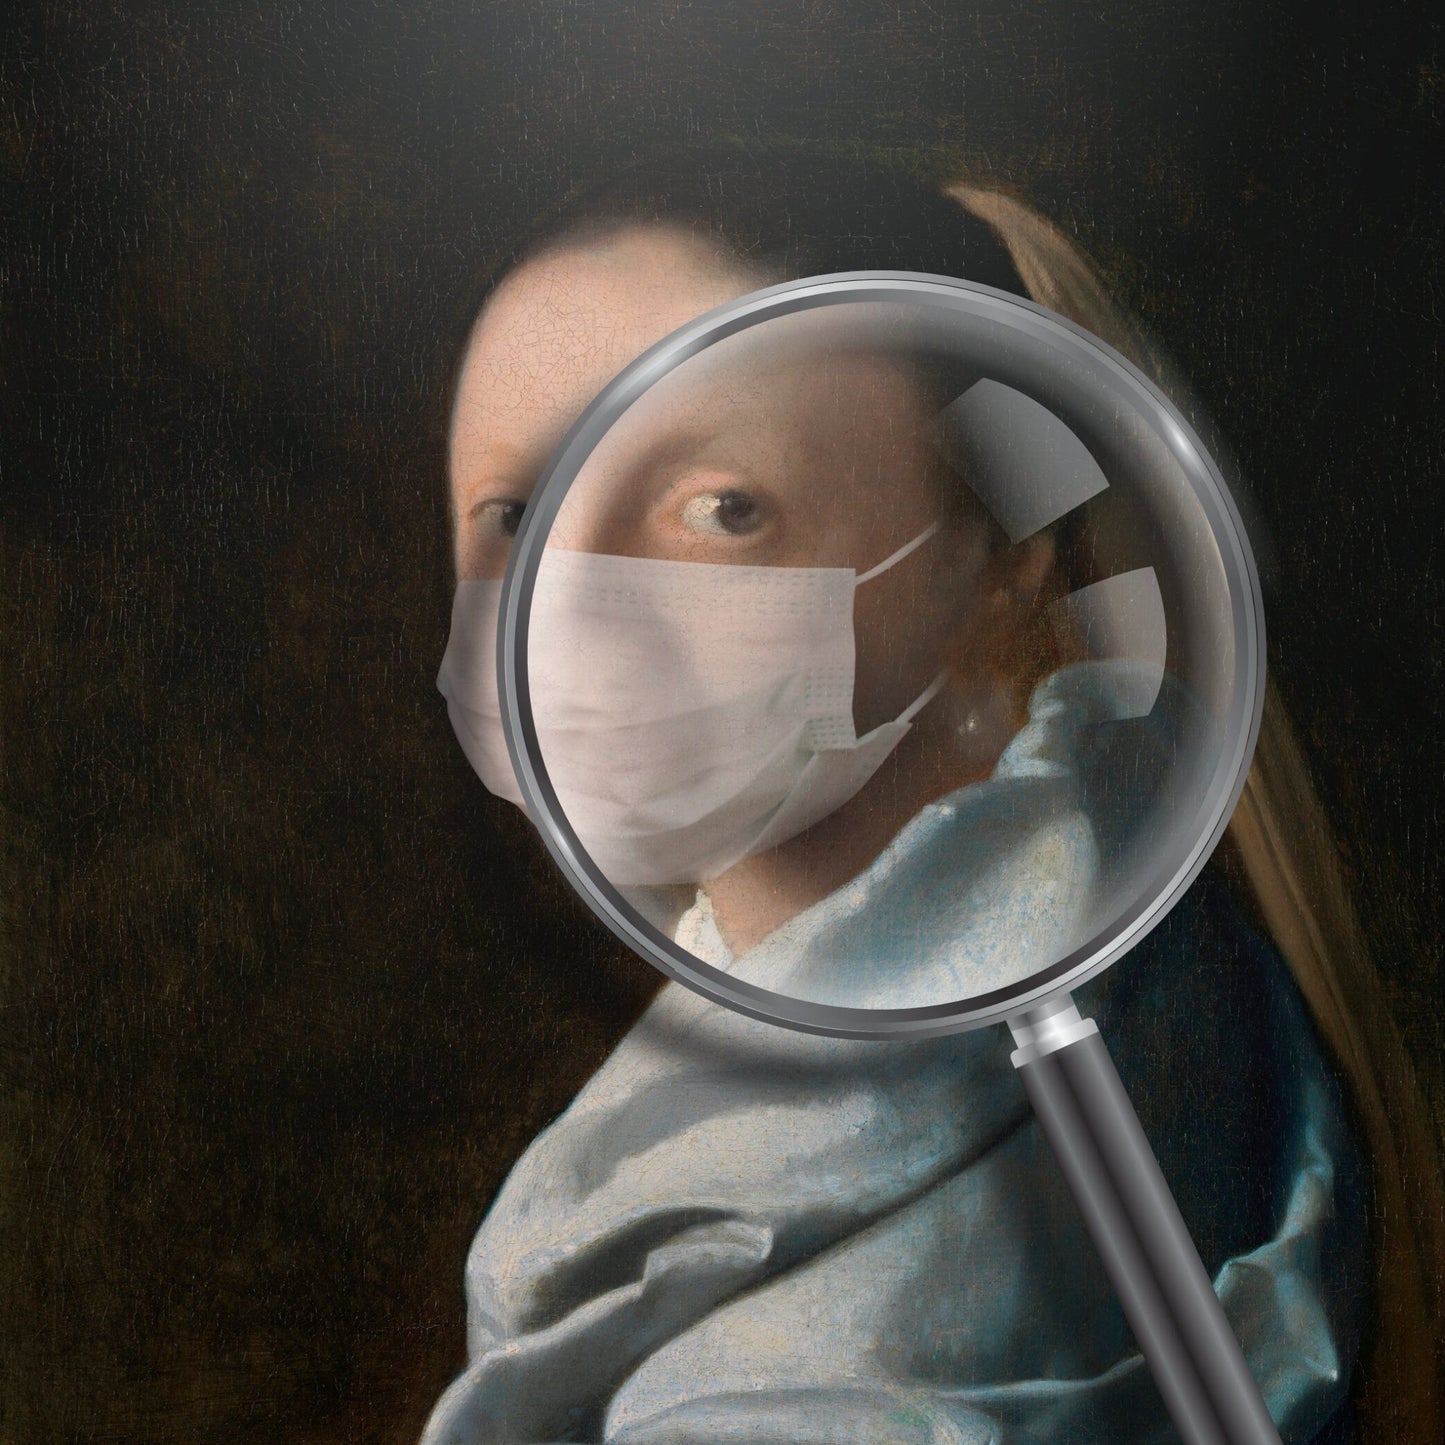 JOHANNES VERMEER - Studie einer jungen Frau mit Gesichtsmaske (retuschiertes klassisches Gemälde)